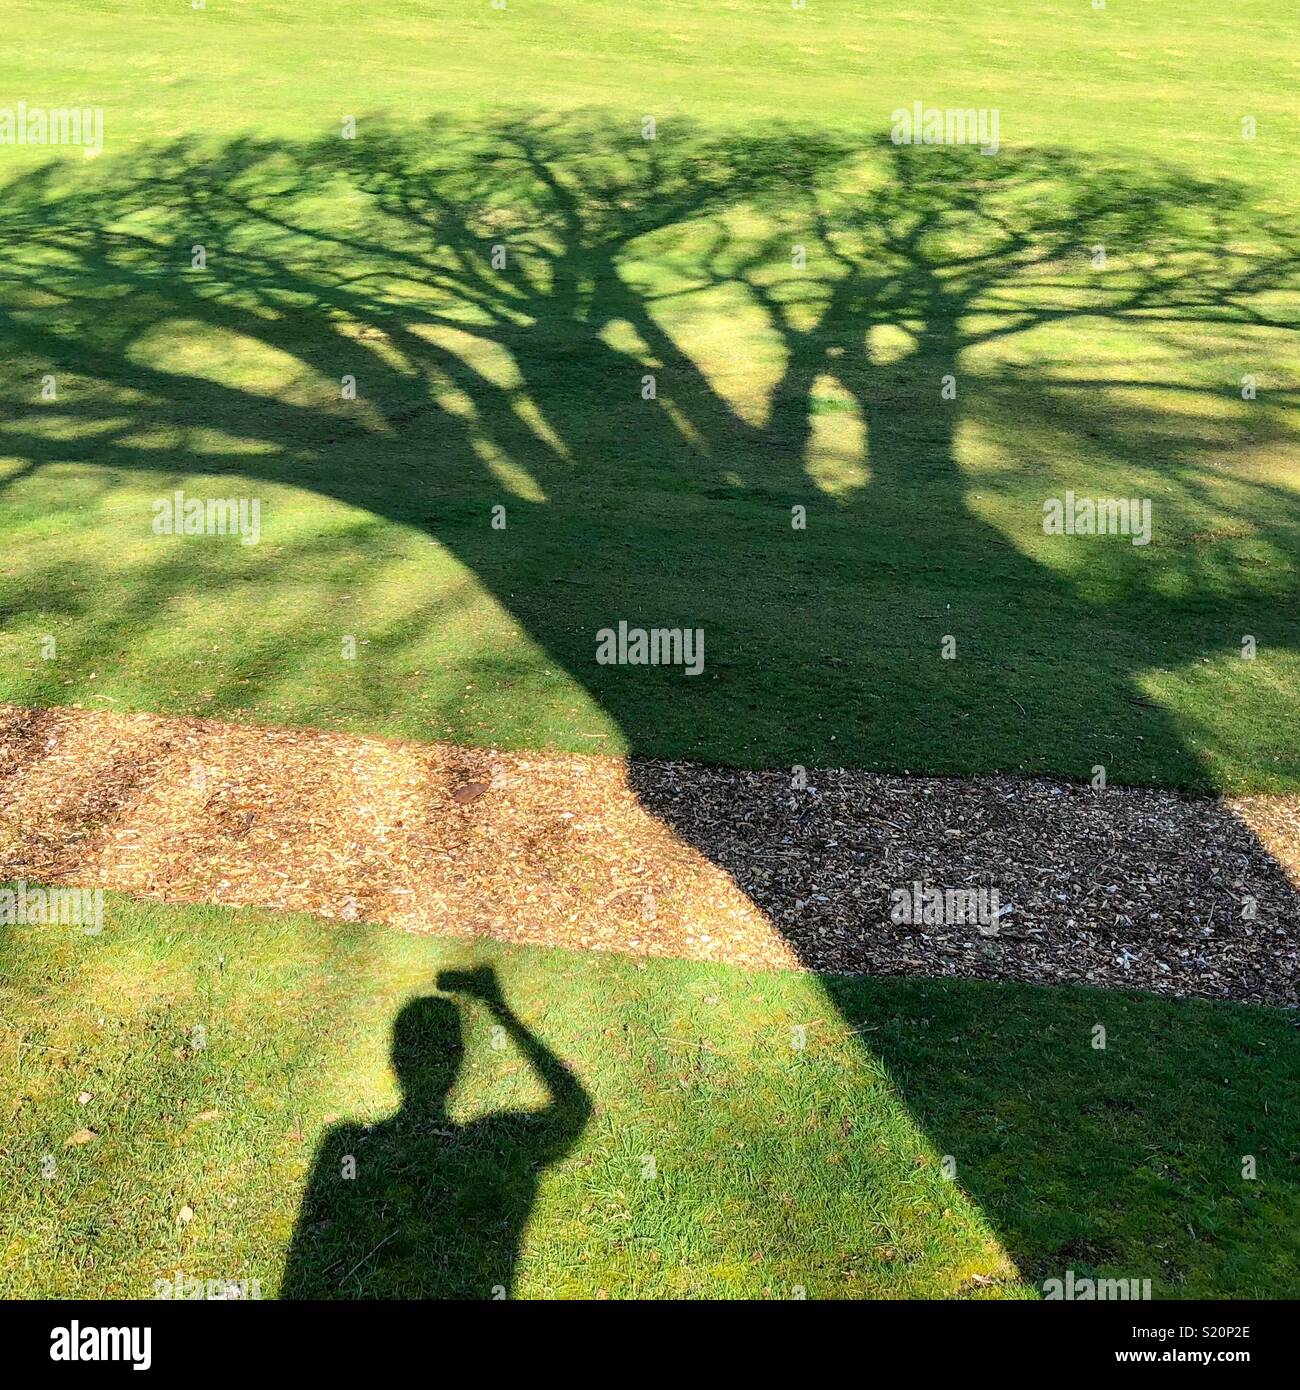 Silhouette d'un chêne d'ombre sur l'herbe verte et l'ombre d'une personne de prendre une photo avec un téléphone Banque D'Images